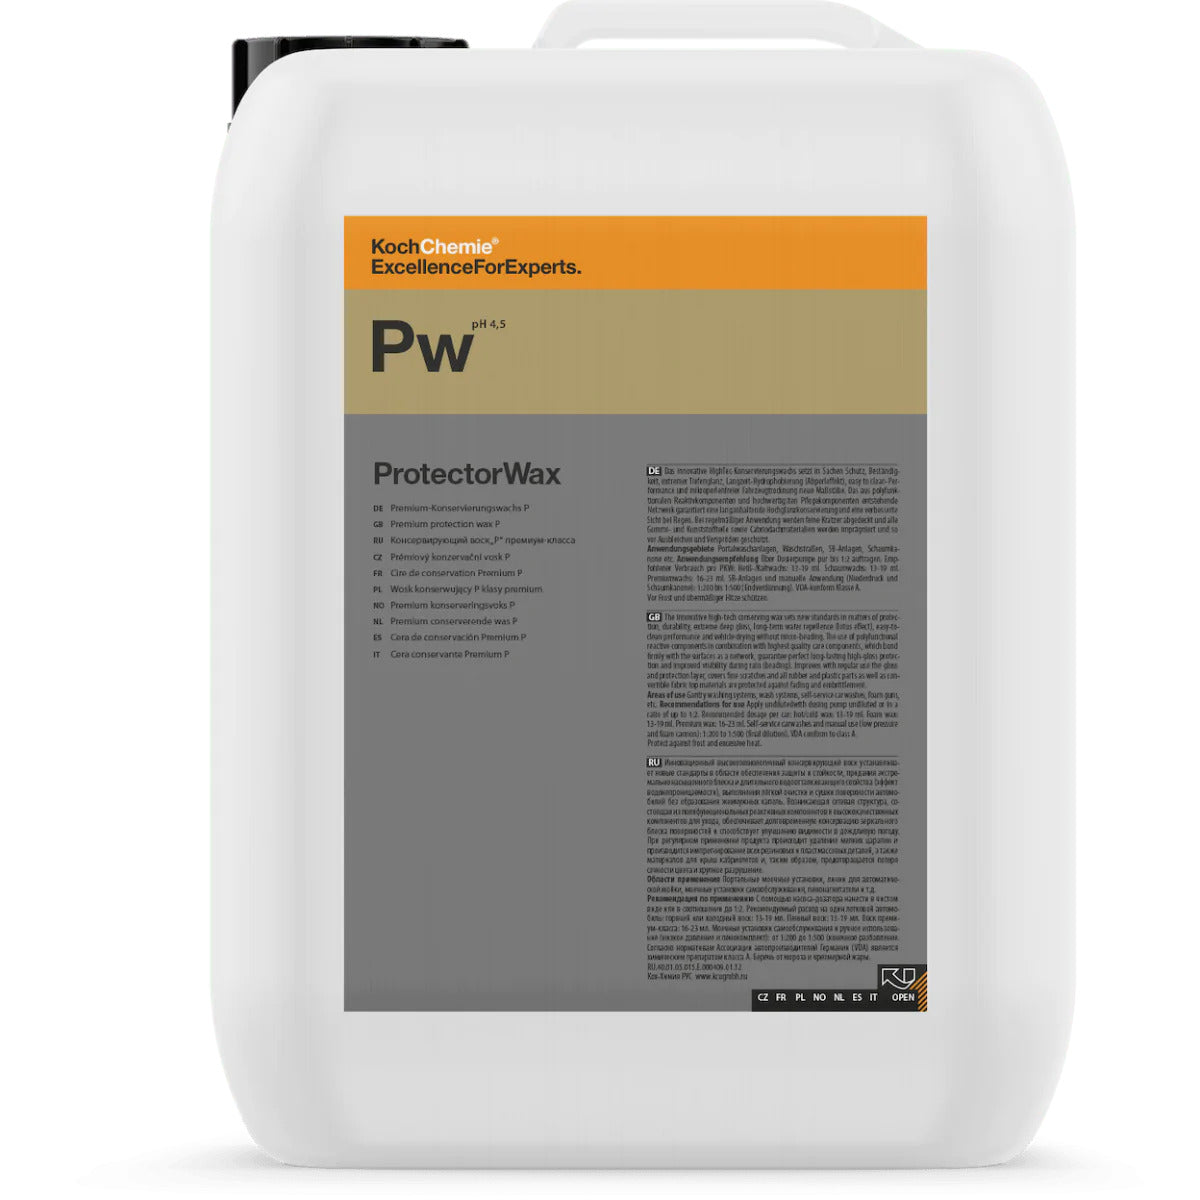 Koch Chemie PW - ProtectorWax